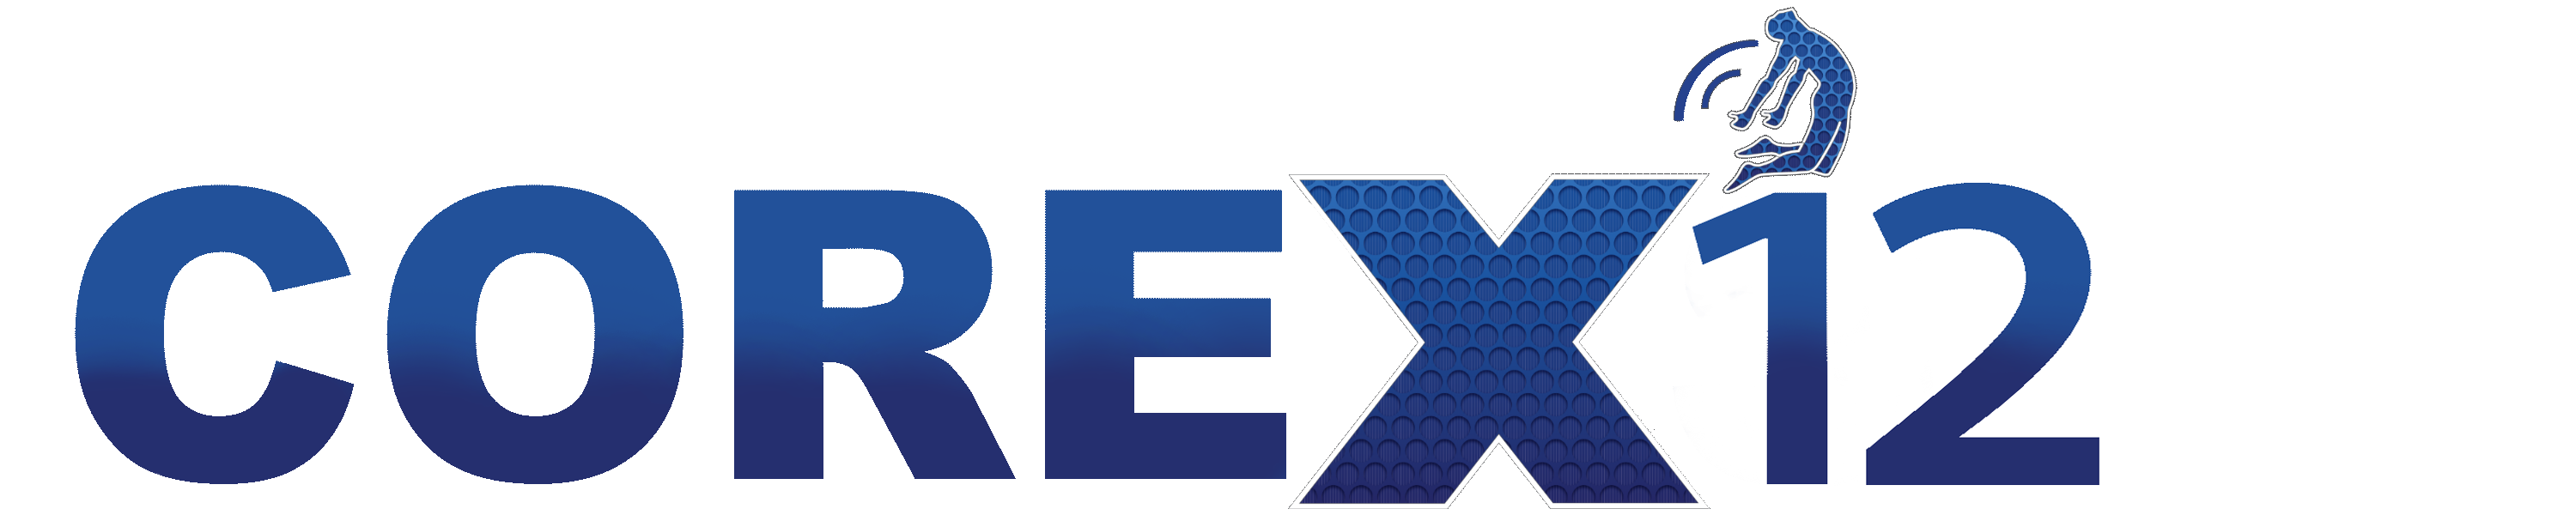 Corexs12 Logo